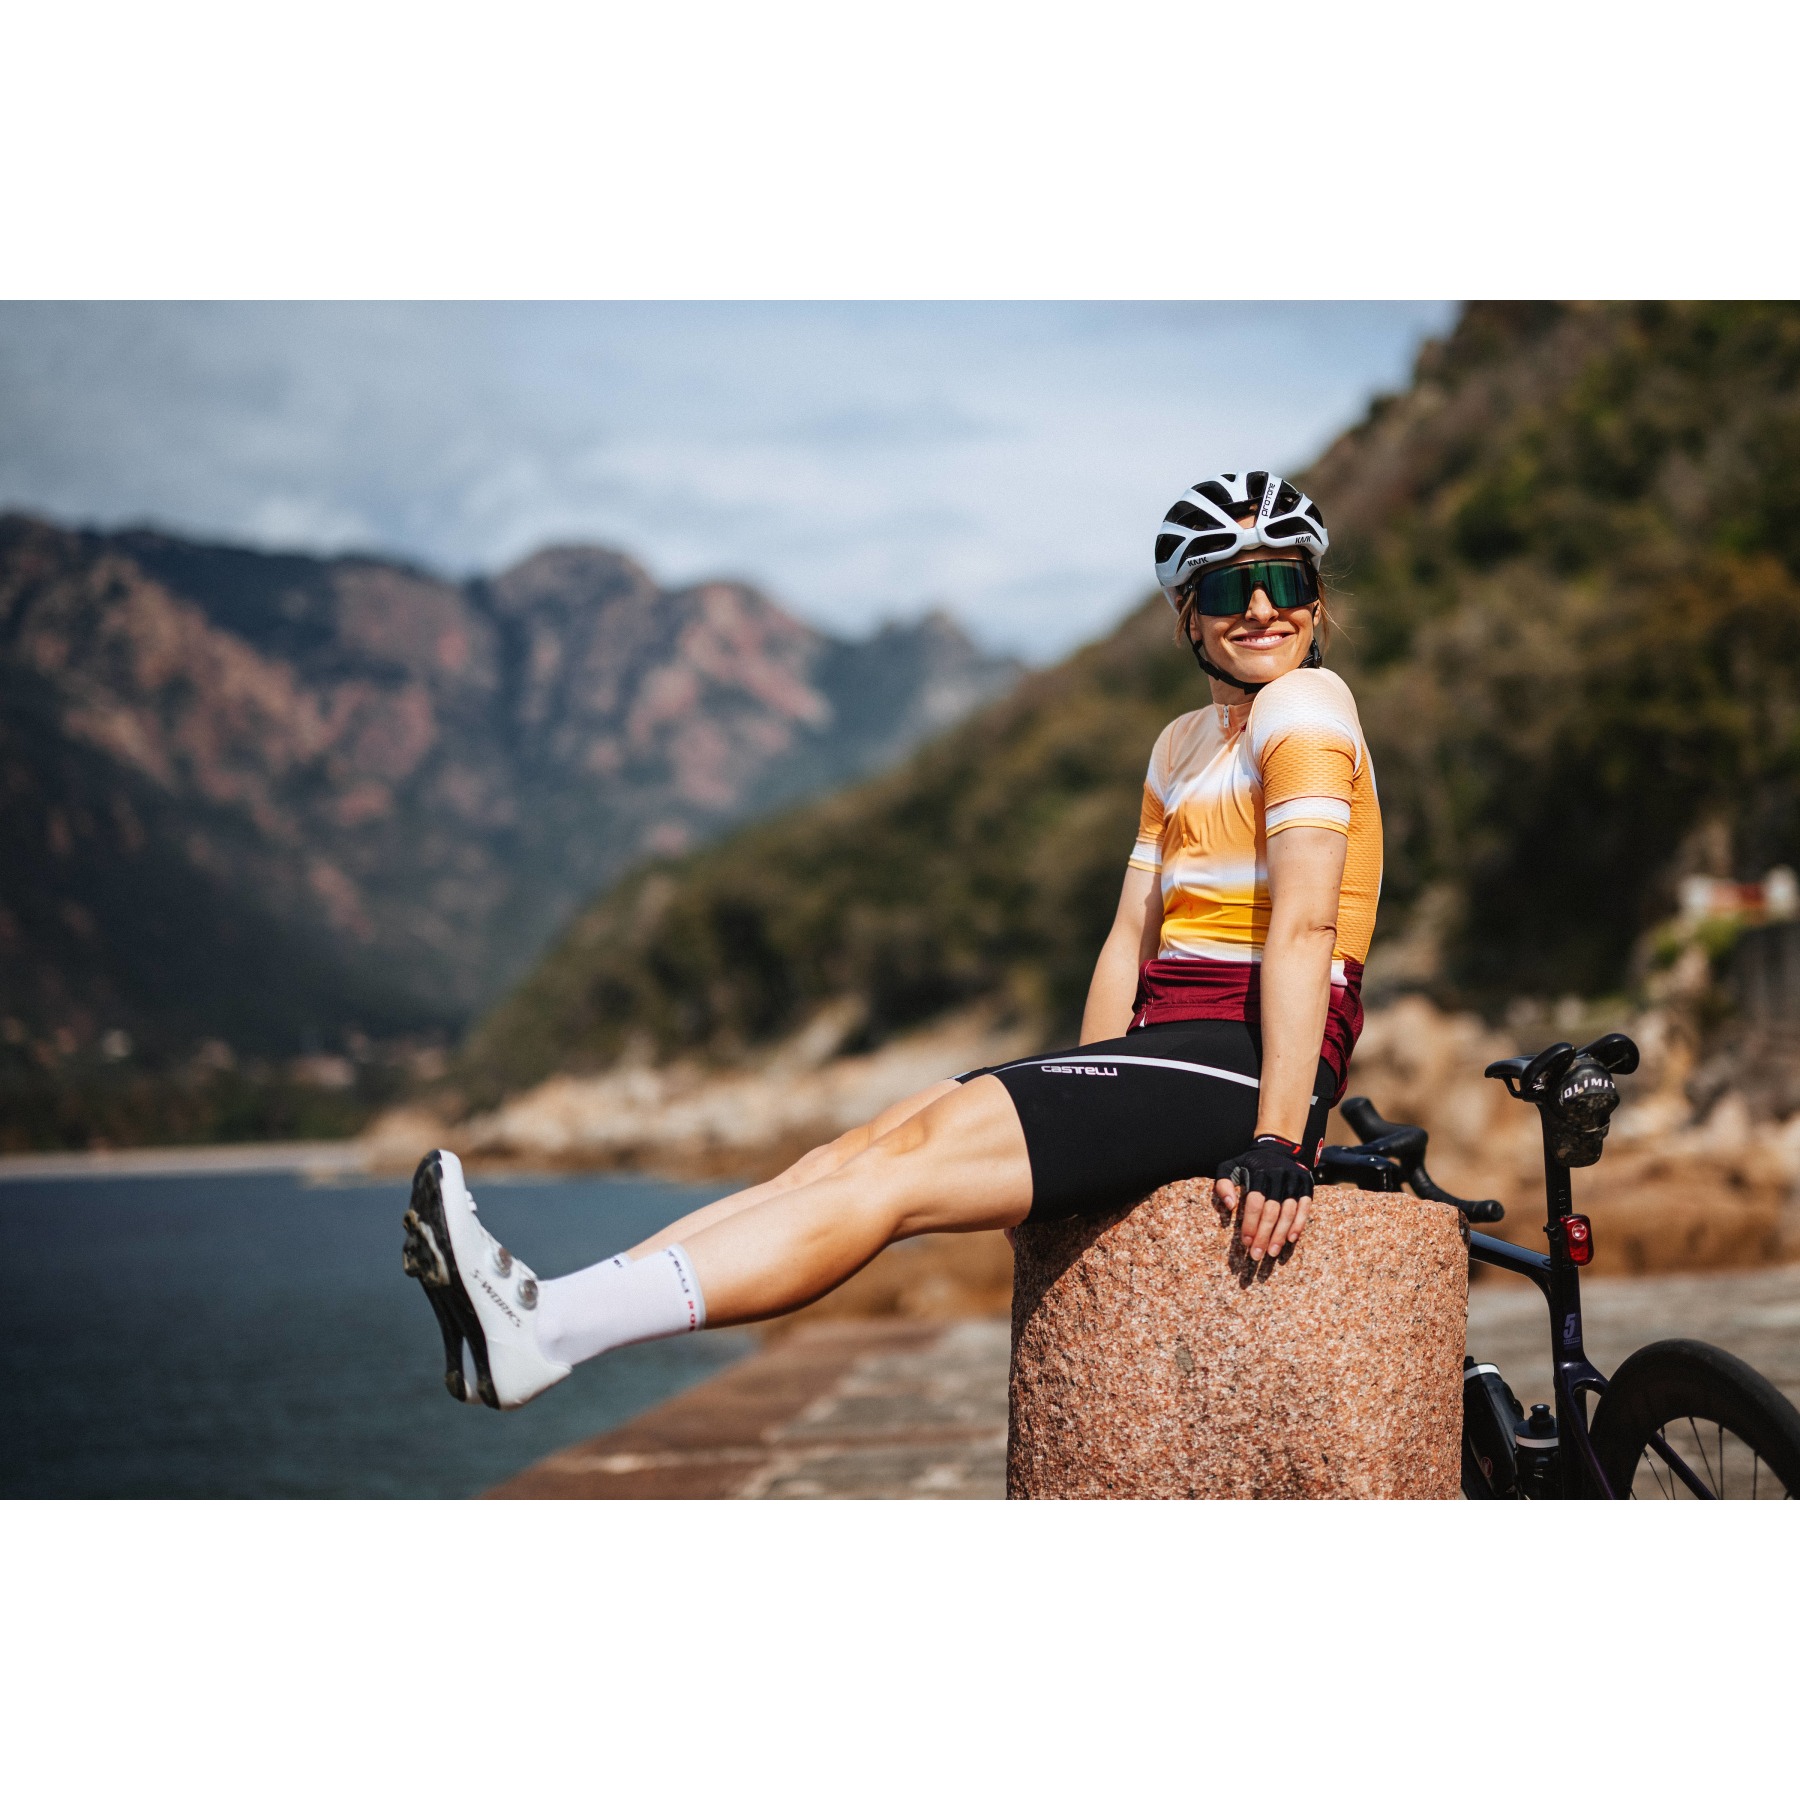 Maillot Ciclismo Mujer Culotte Corto Con Tirantes